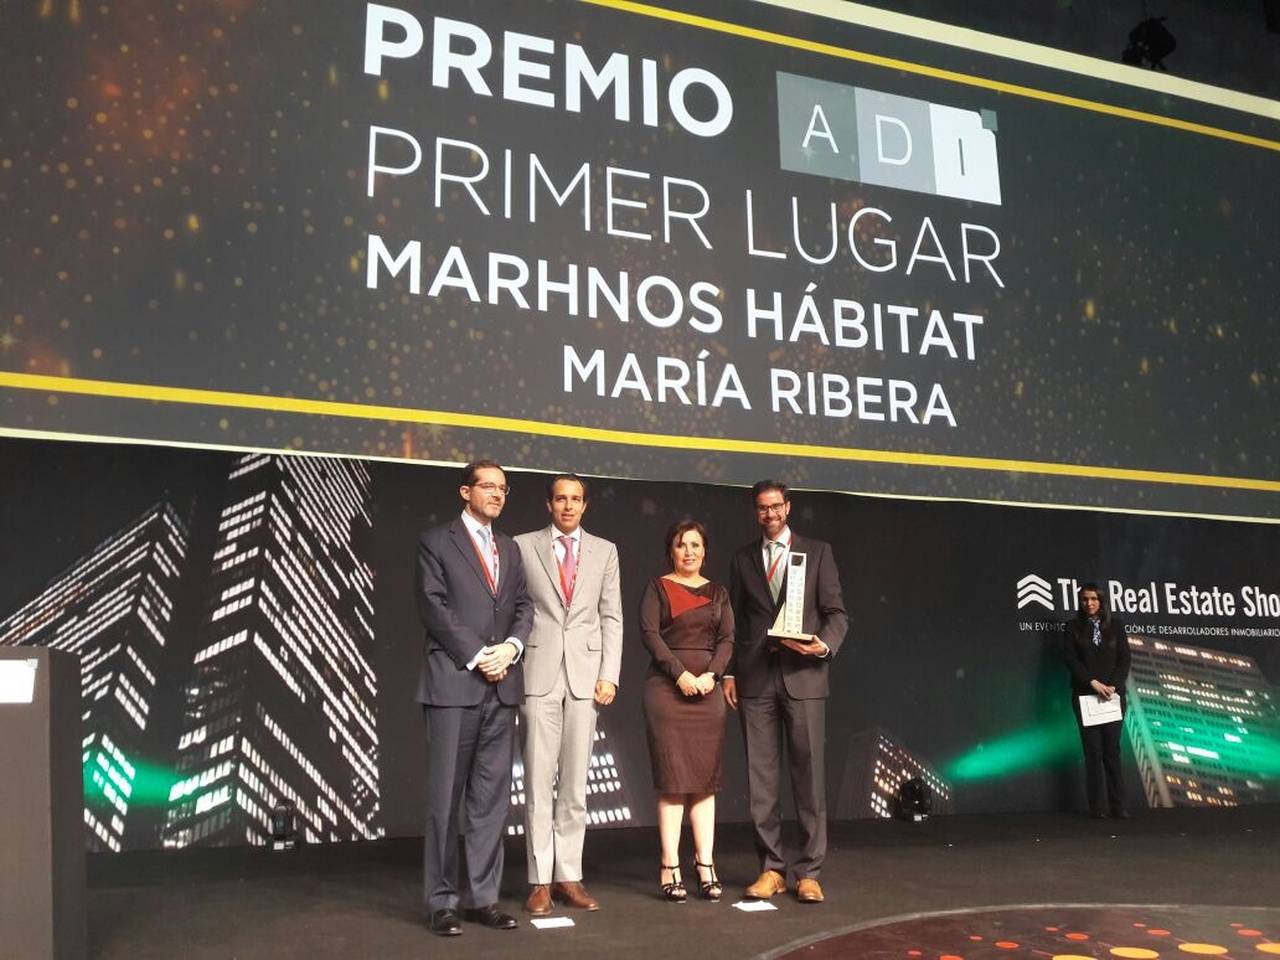 ADI Premia al Proyecto Residencial María Ribera de Desarrolladora Marhnos : Render © Marhnos Habitat